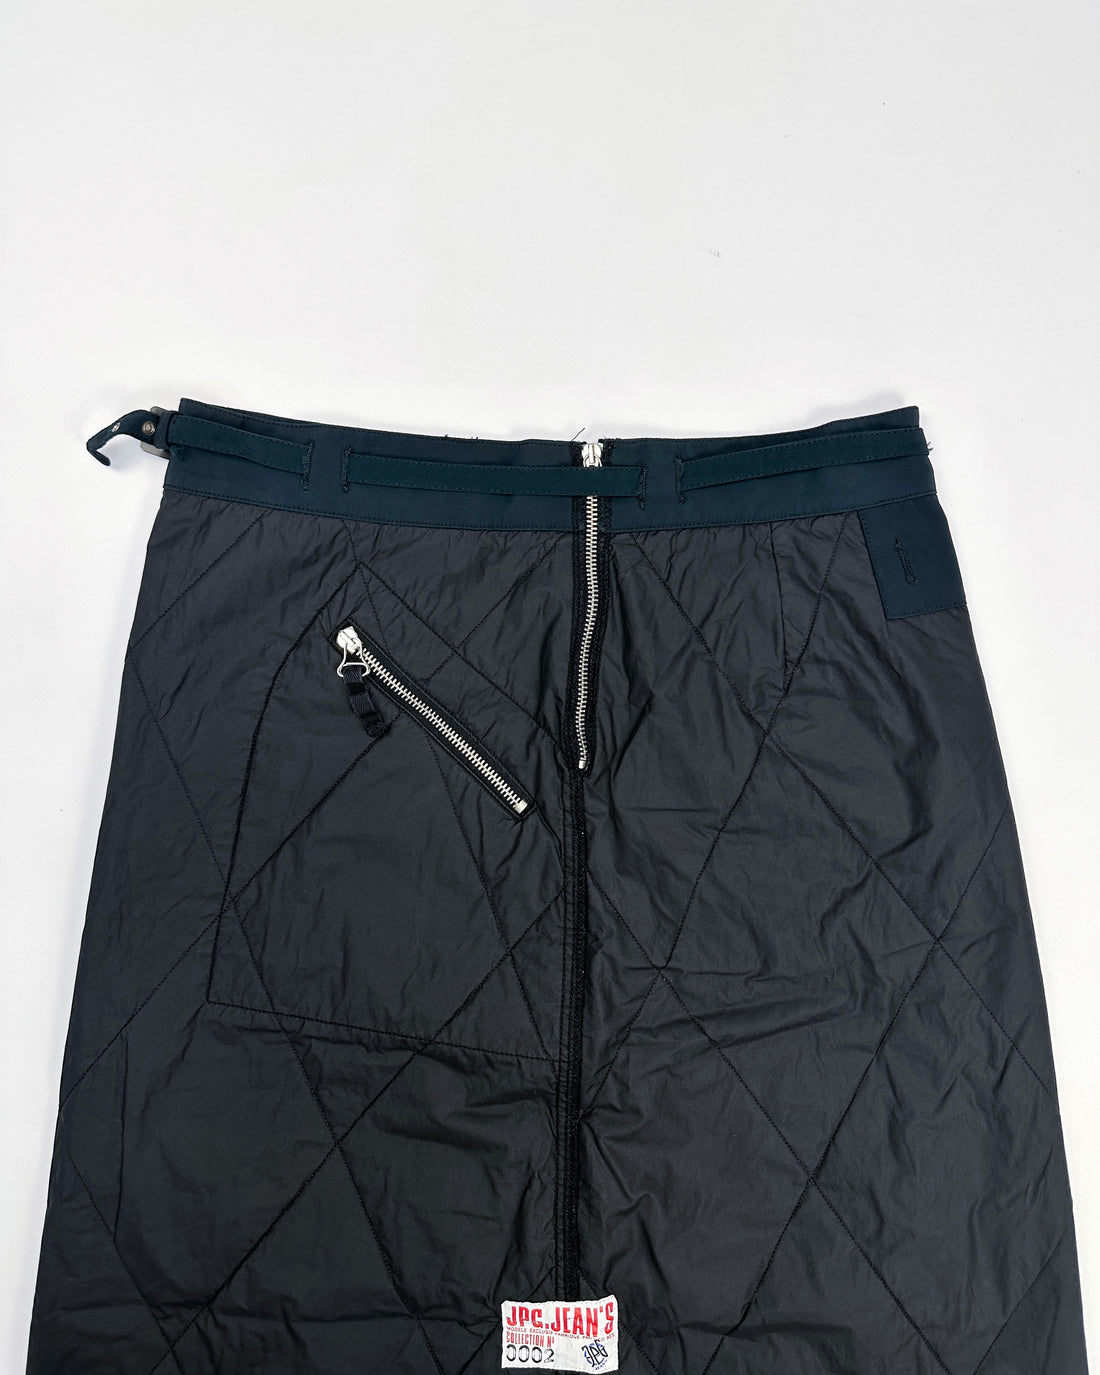 Jean Paul Gaultier Black Padded Skirt 2000's